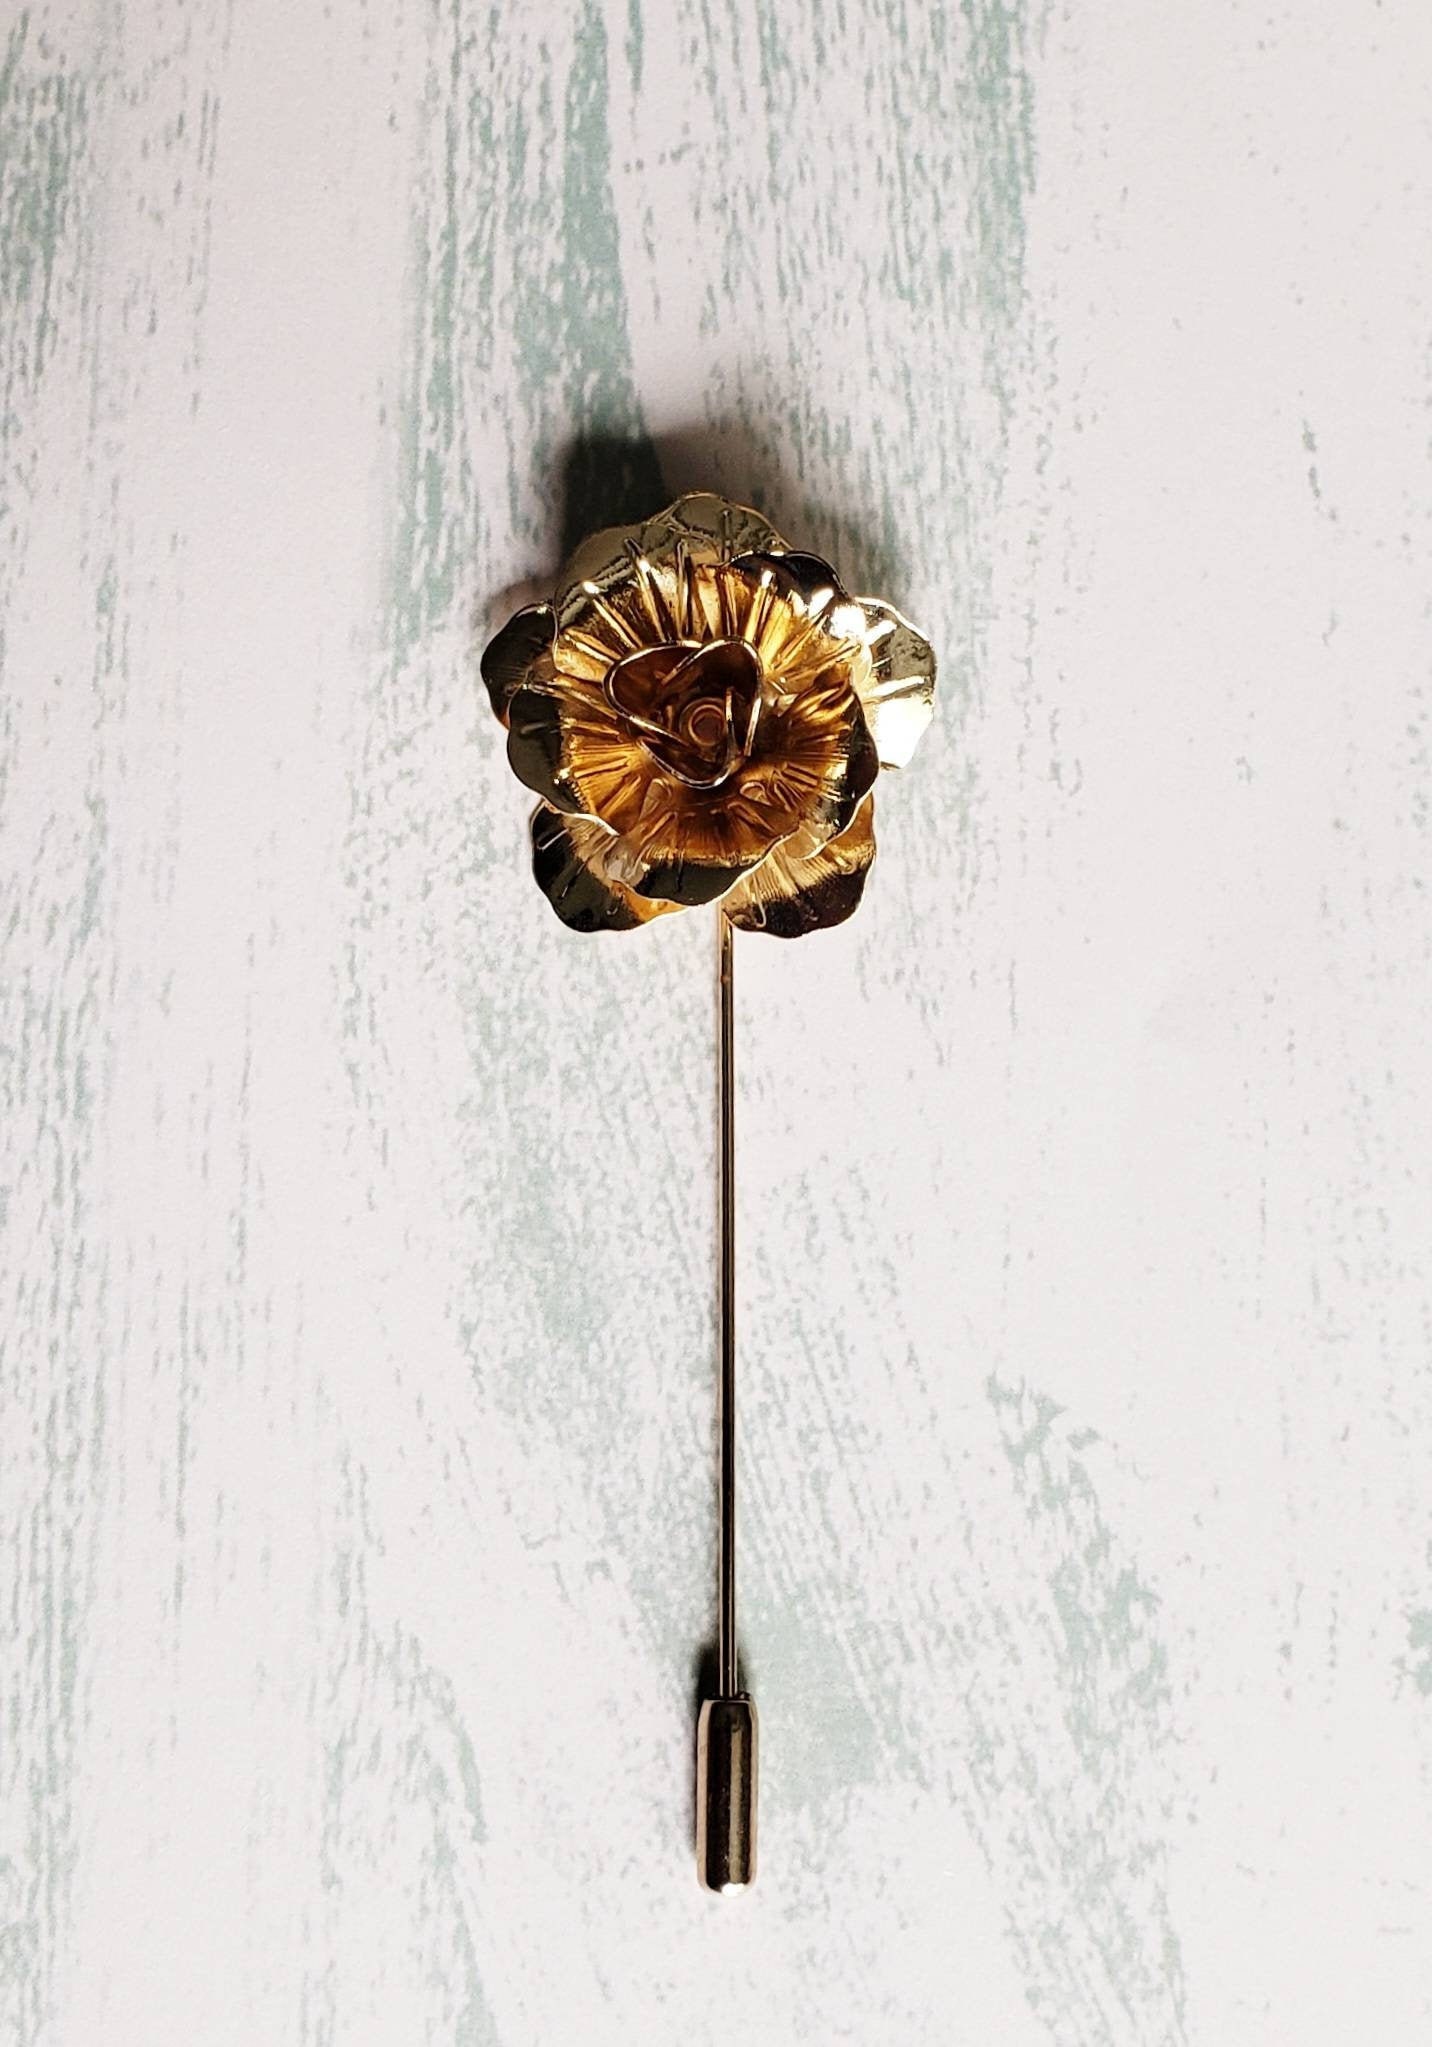 Rose Flower Lapel Pin Metal Gold, Rose Gold, Silver, Black Women